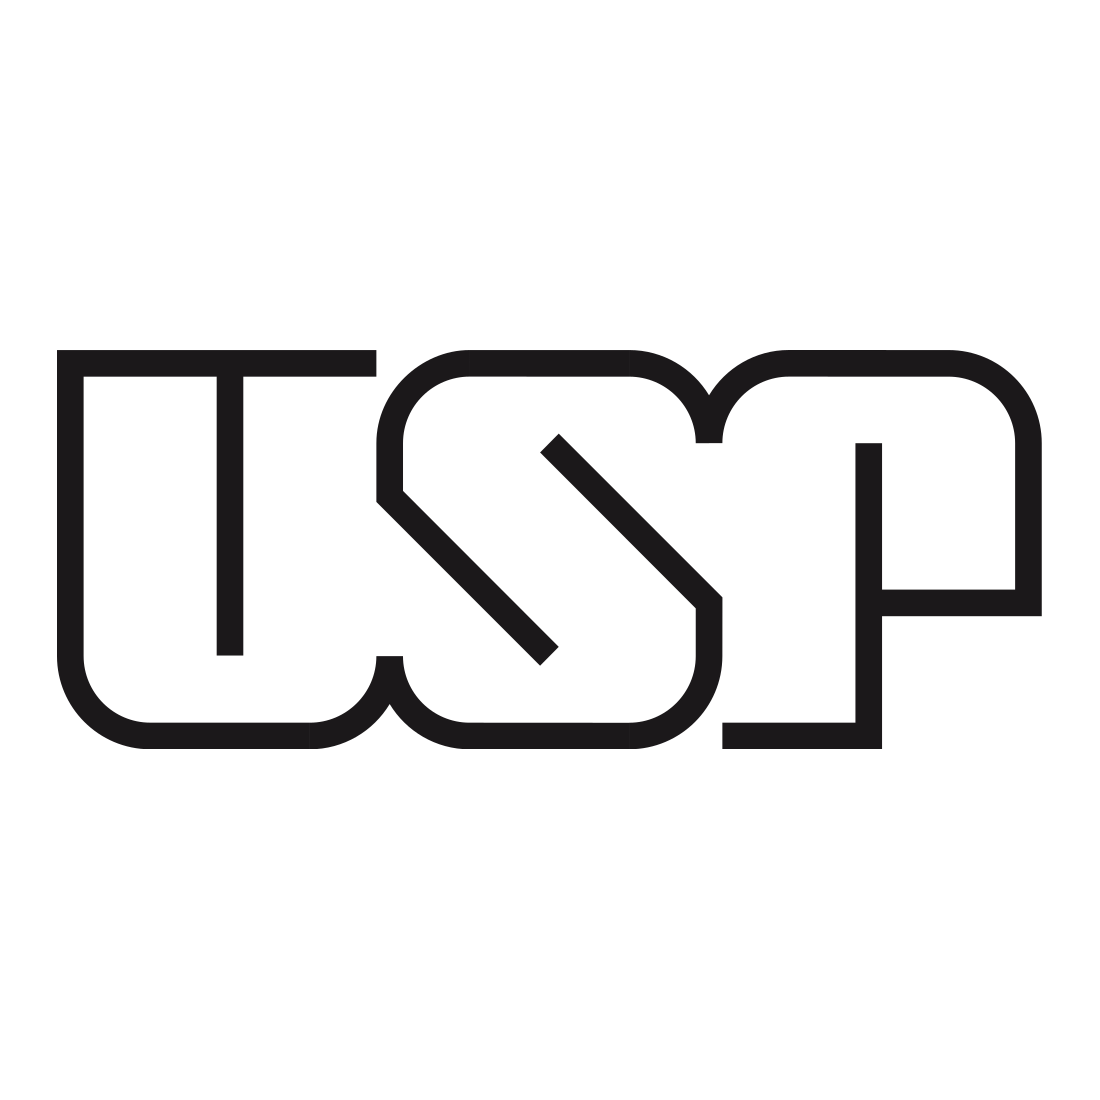 Logo for the USP